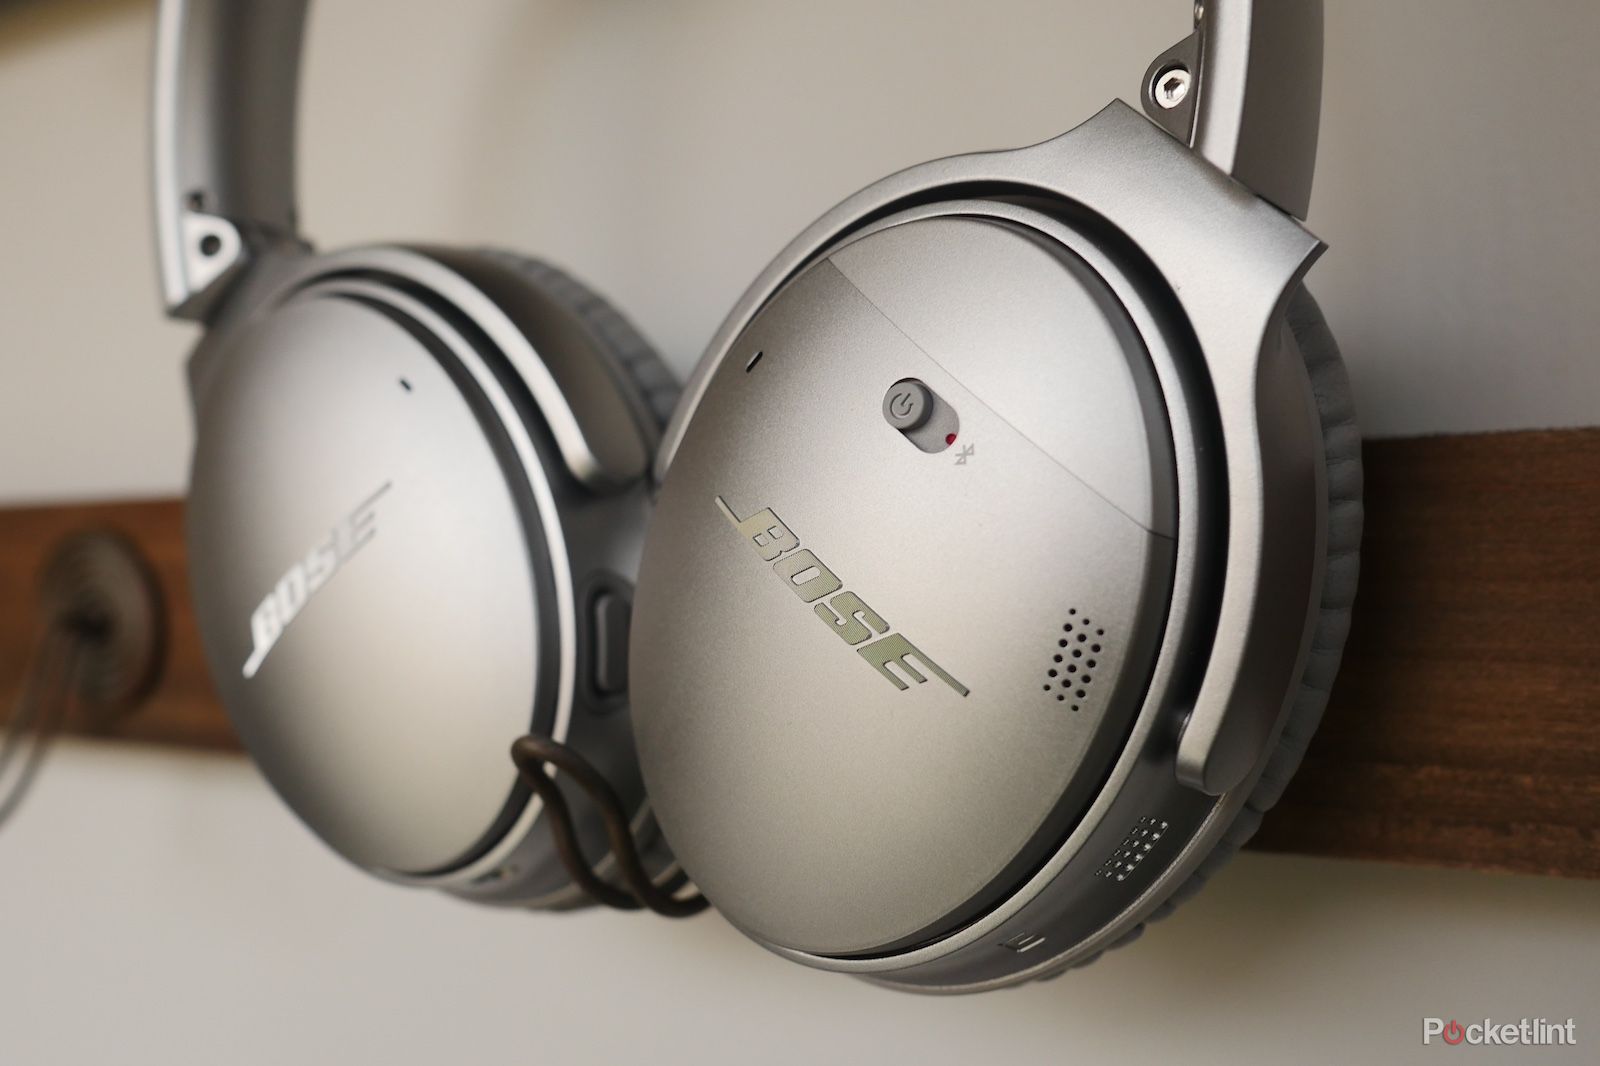 Get free Bose QC35 II headphones with Huawei P20 pre-orders image 1